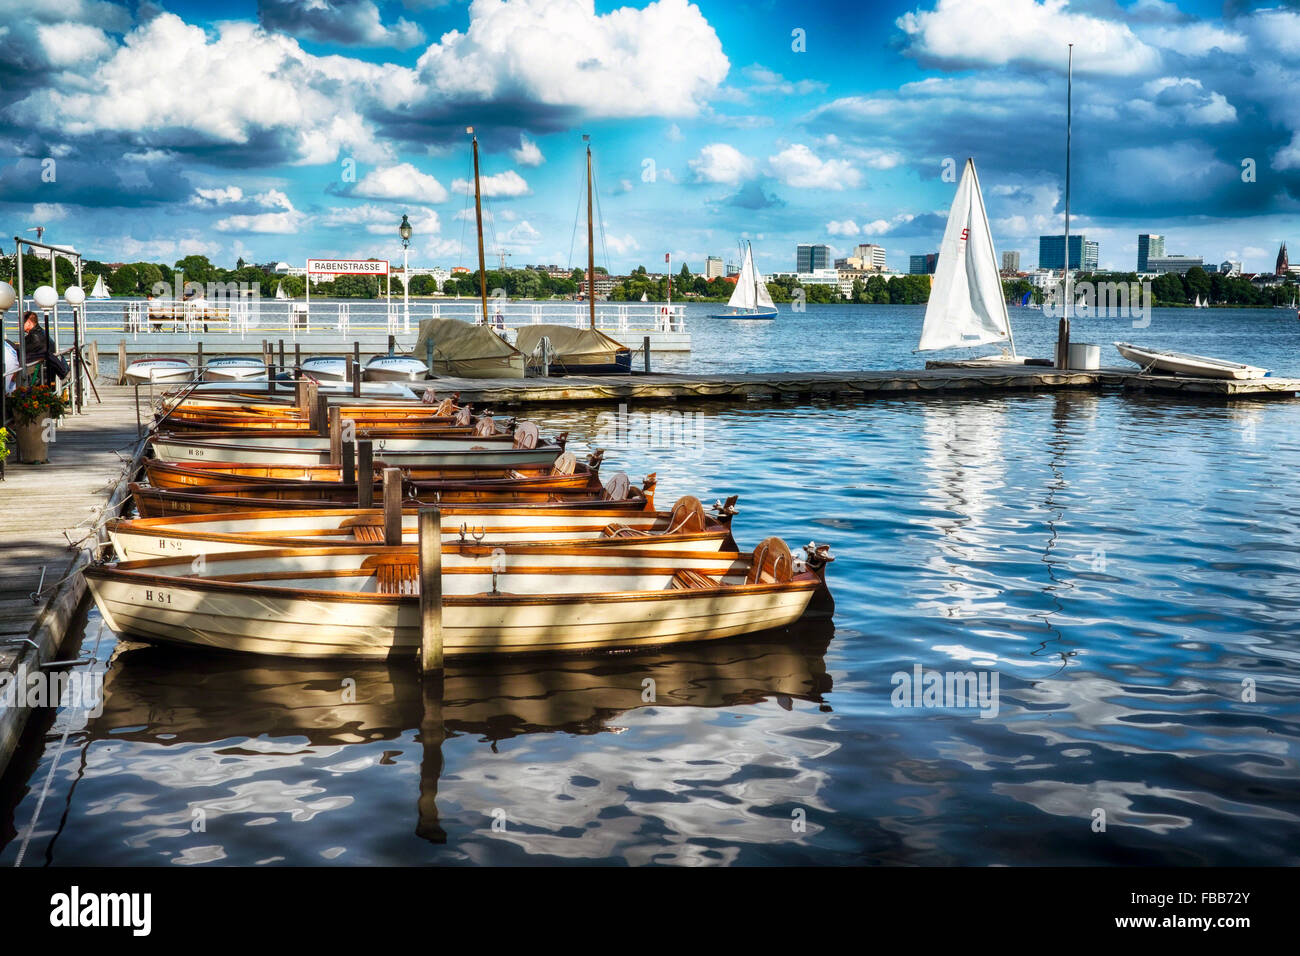 Les petits bateaux à la jetée, Lac Alster, Rabenstrasse, Hambourg, Allemagne Banque D'Images